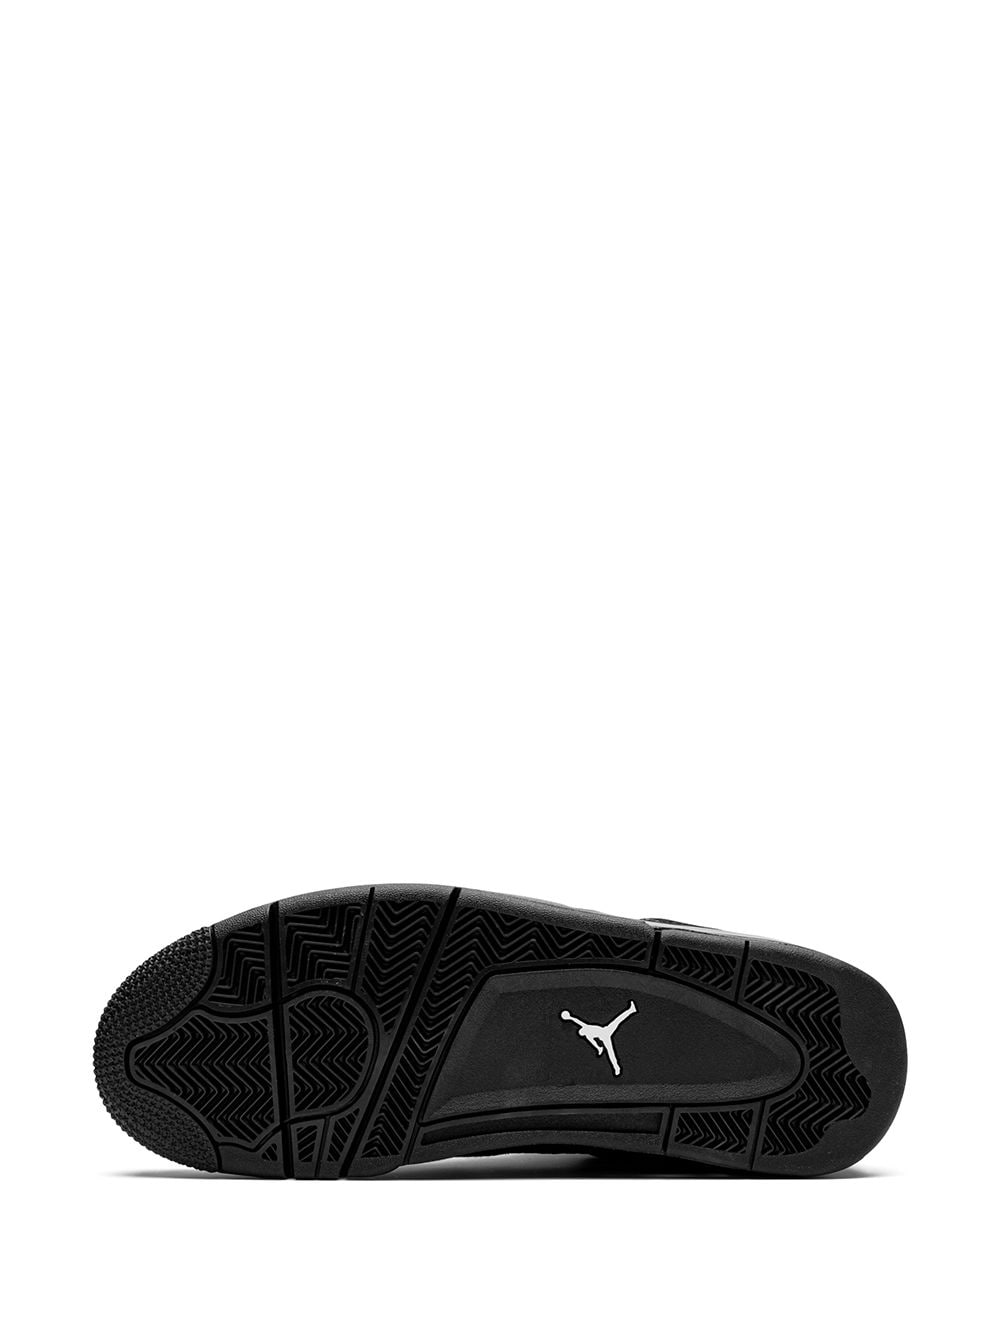 Air Jordan Retro 4 BLACK CAT